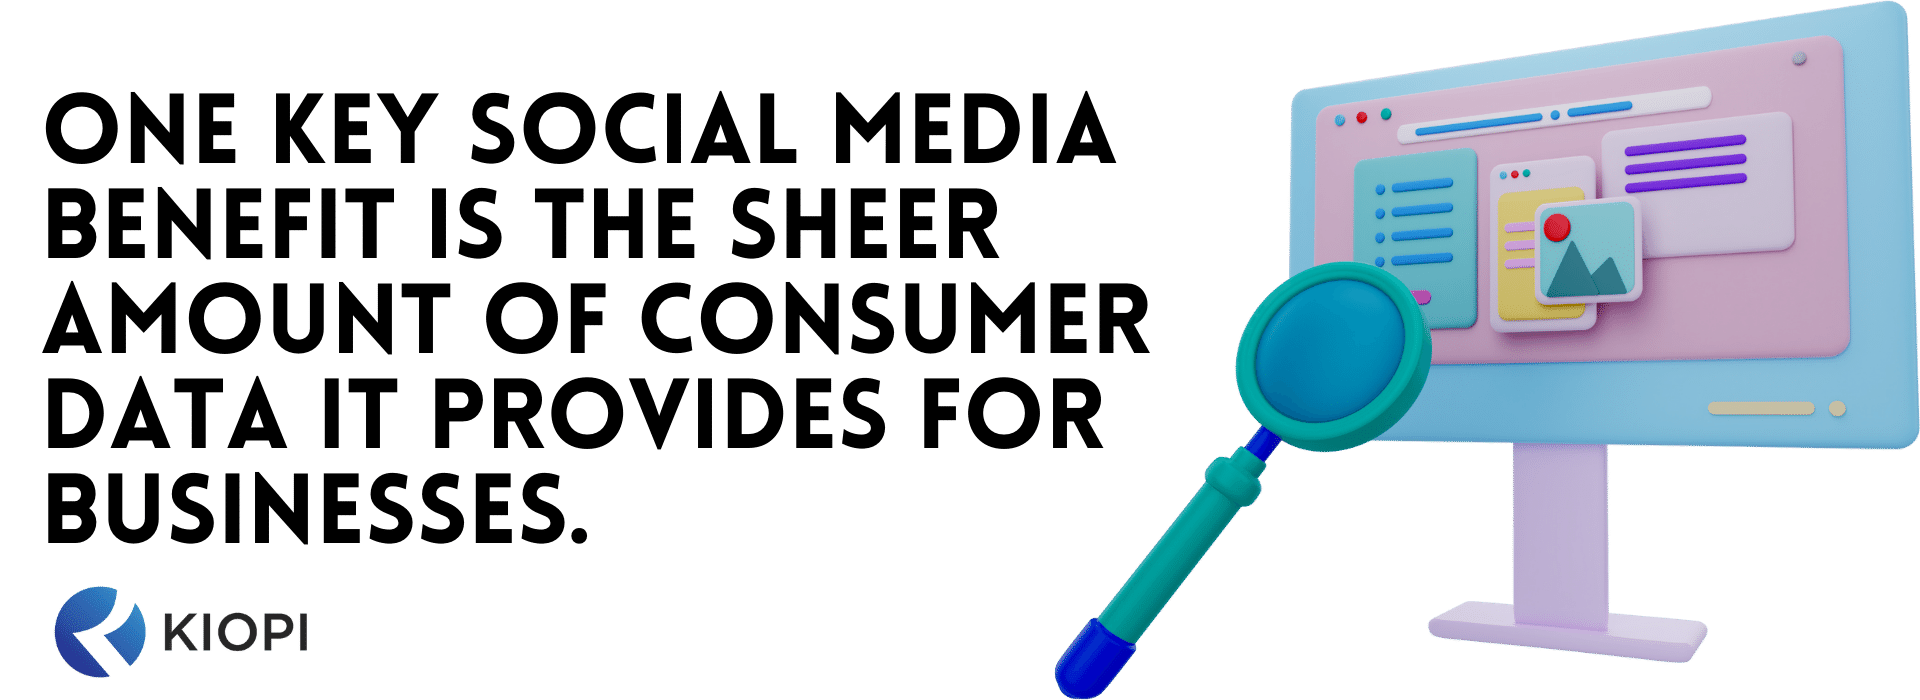 benefício das mídias sociais para empresas